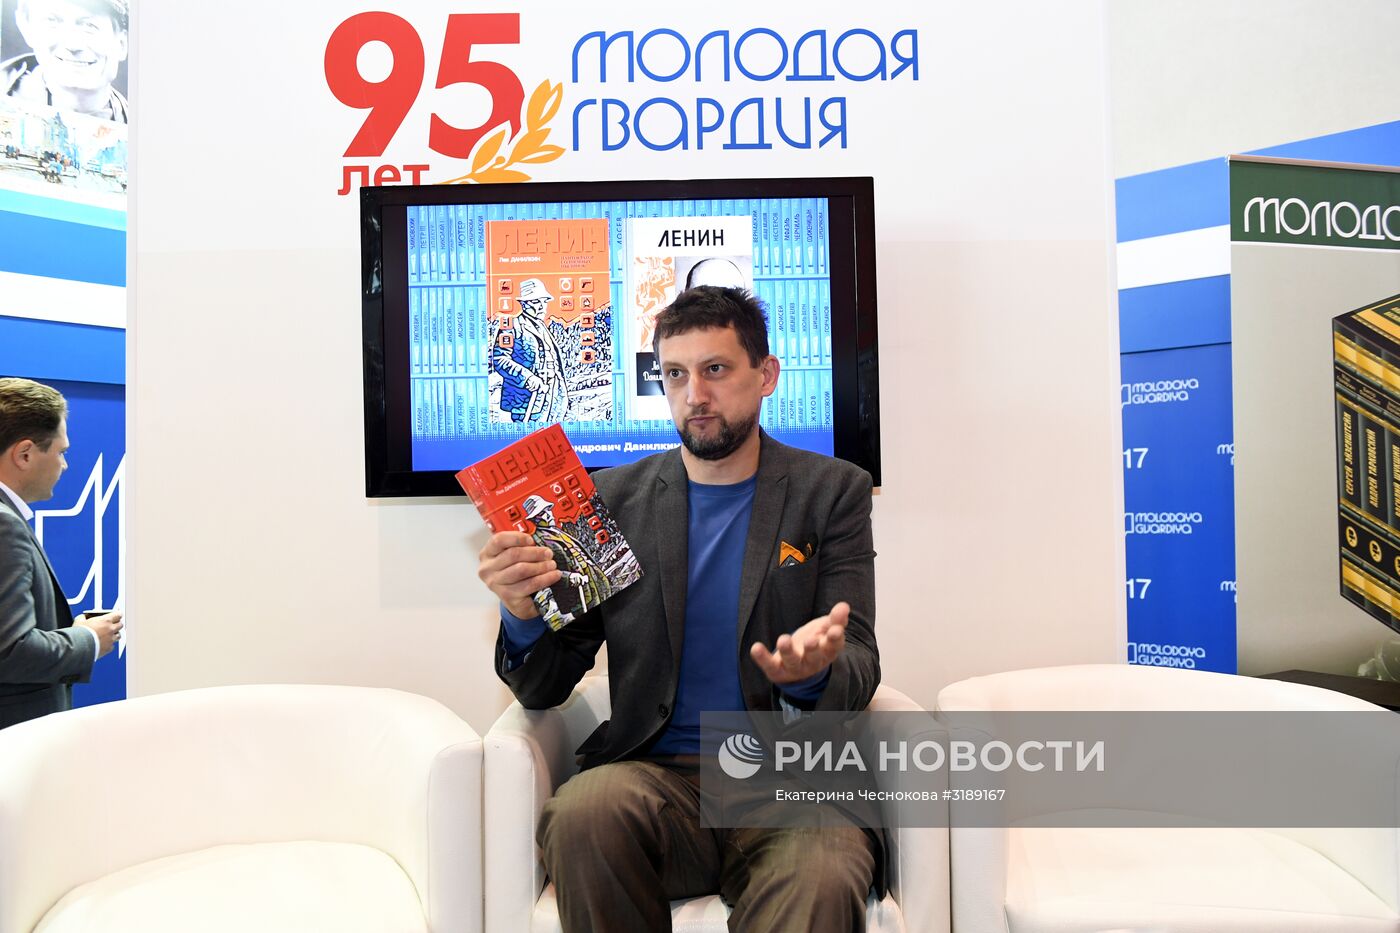 30-я Московская международная книжная выставка-ярмарка. День четвертый